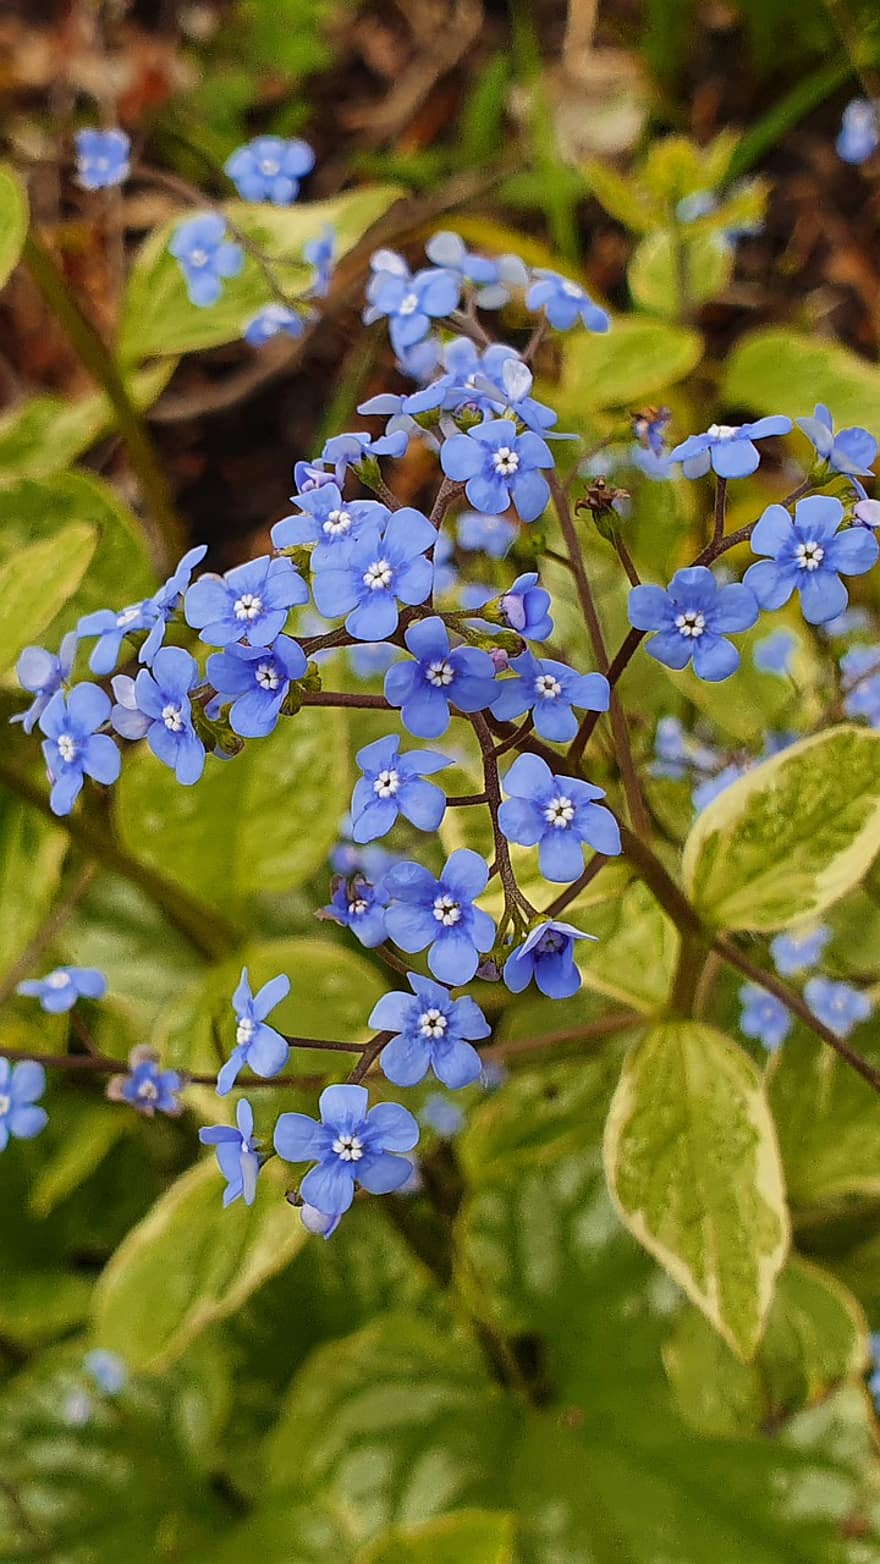 dimenticami forse, blu, fiore, giardino